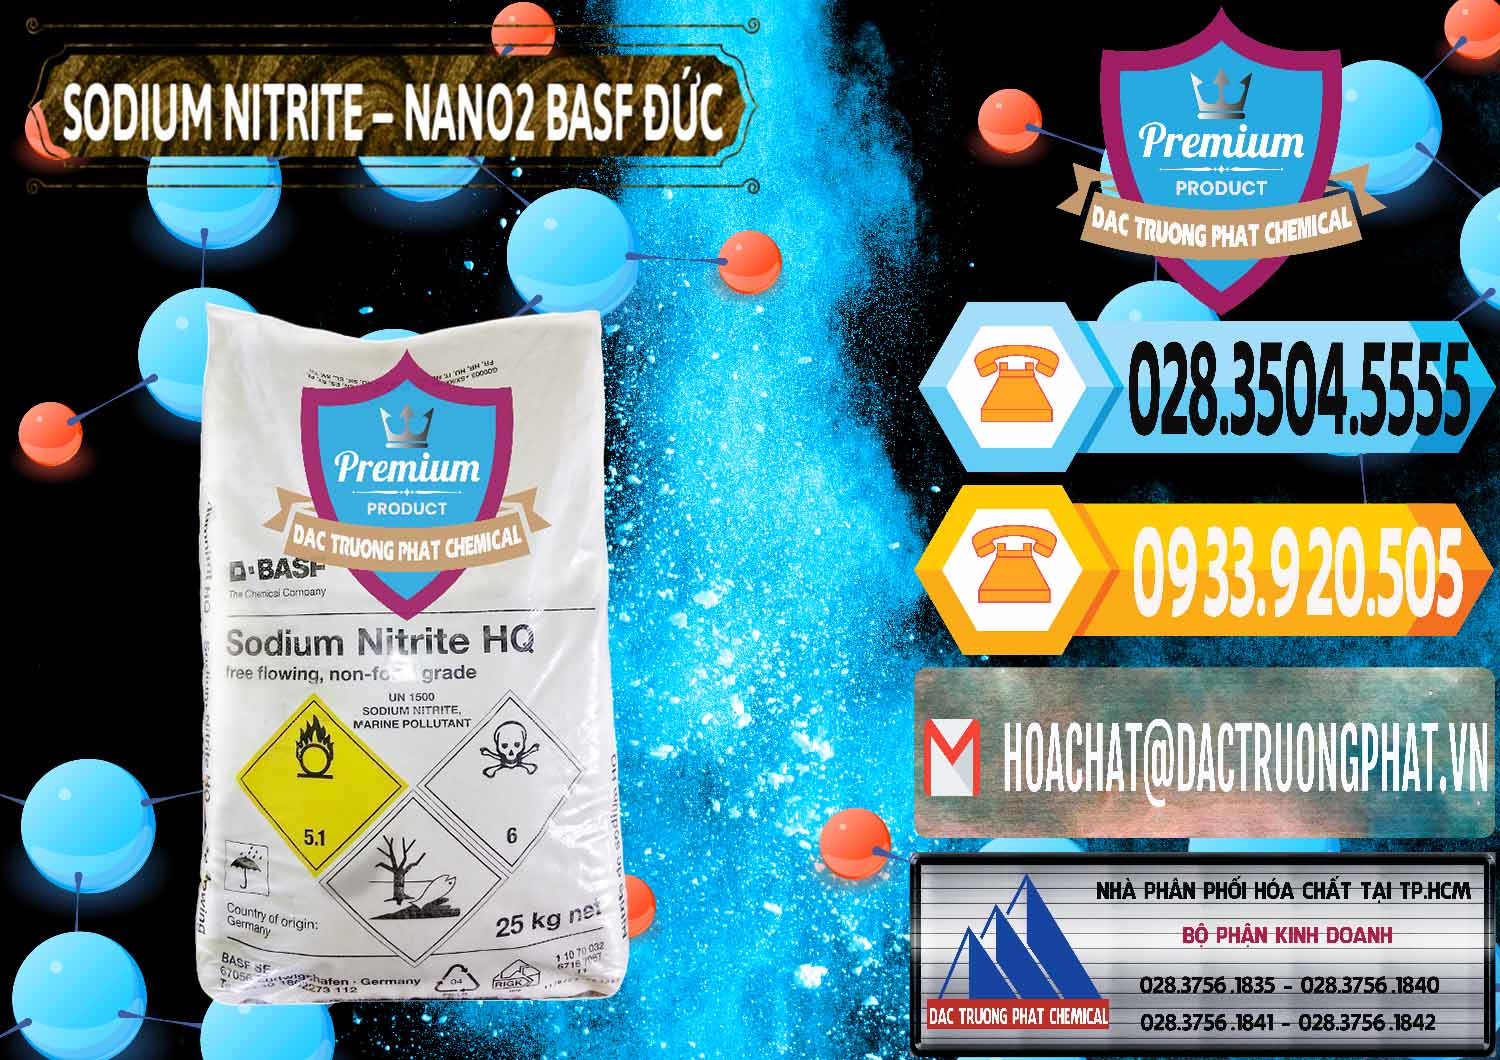 Đơn vị chuyên cung cấp ( bán ) Sodium Nitrite - NANO2 Đức BASF Germany - 0148 - Cty chuyên kinh doanh ( phân phối ) hóa chất tại TP.HCM - hoachattayrua.net